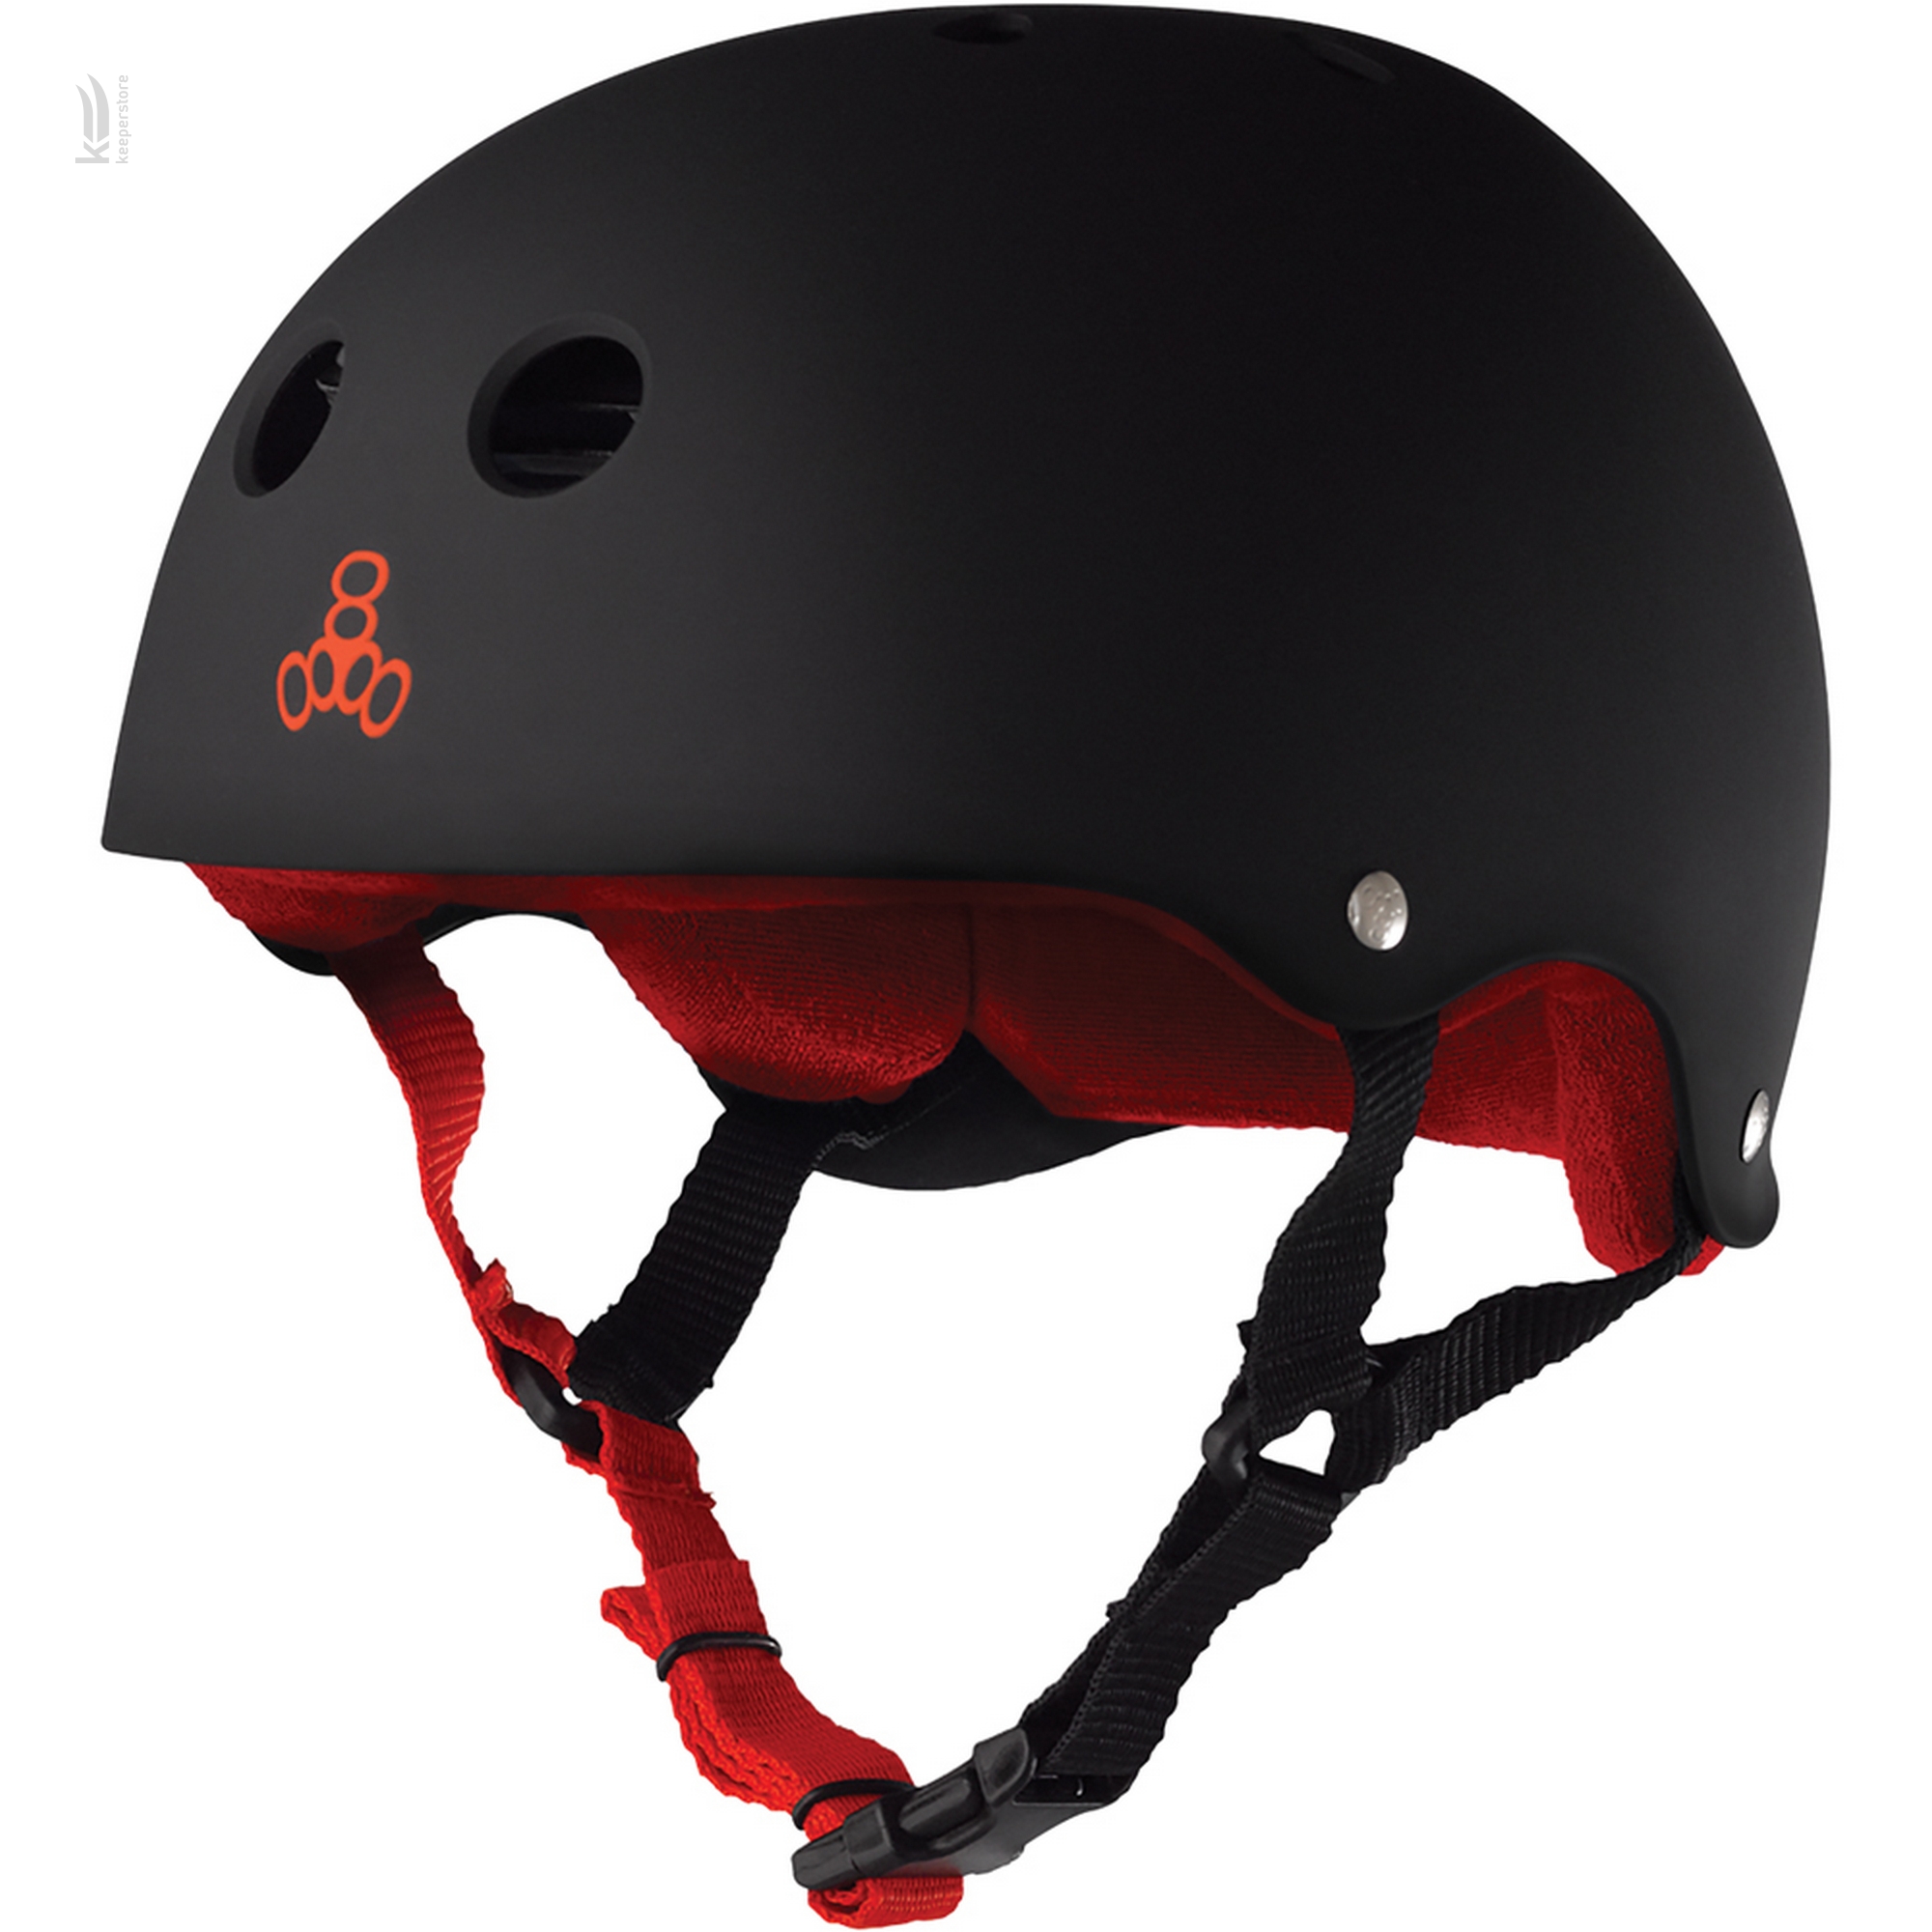 Защитный шлем казанок Triple8 Sweatsaver Helmet Black w/ Red (XL)